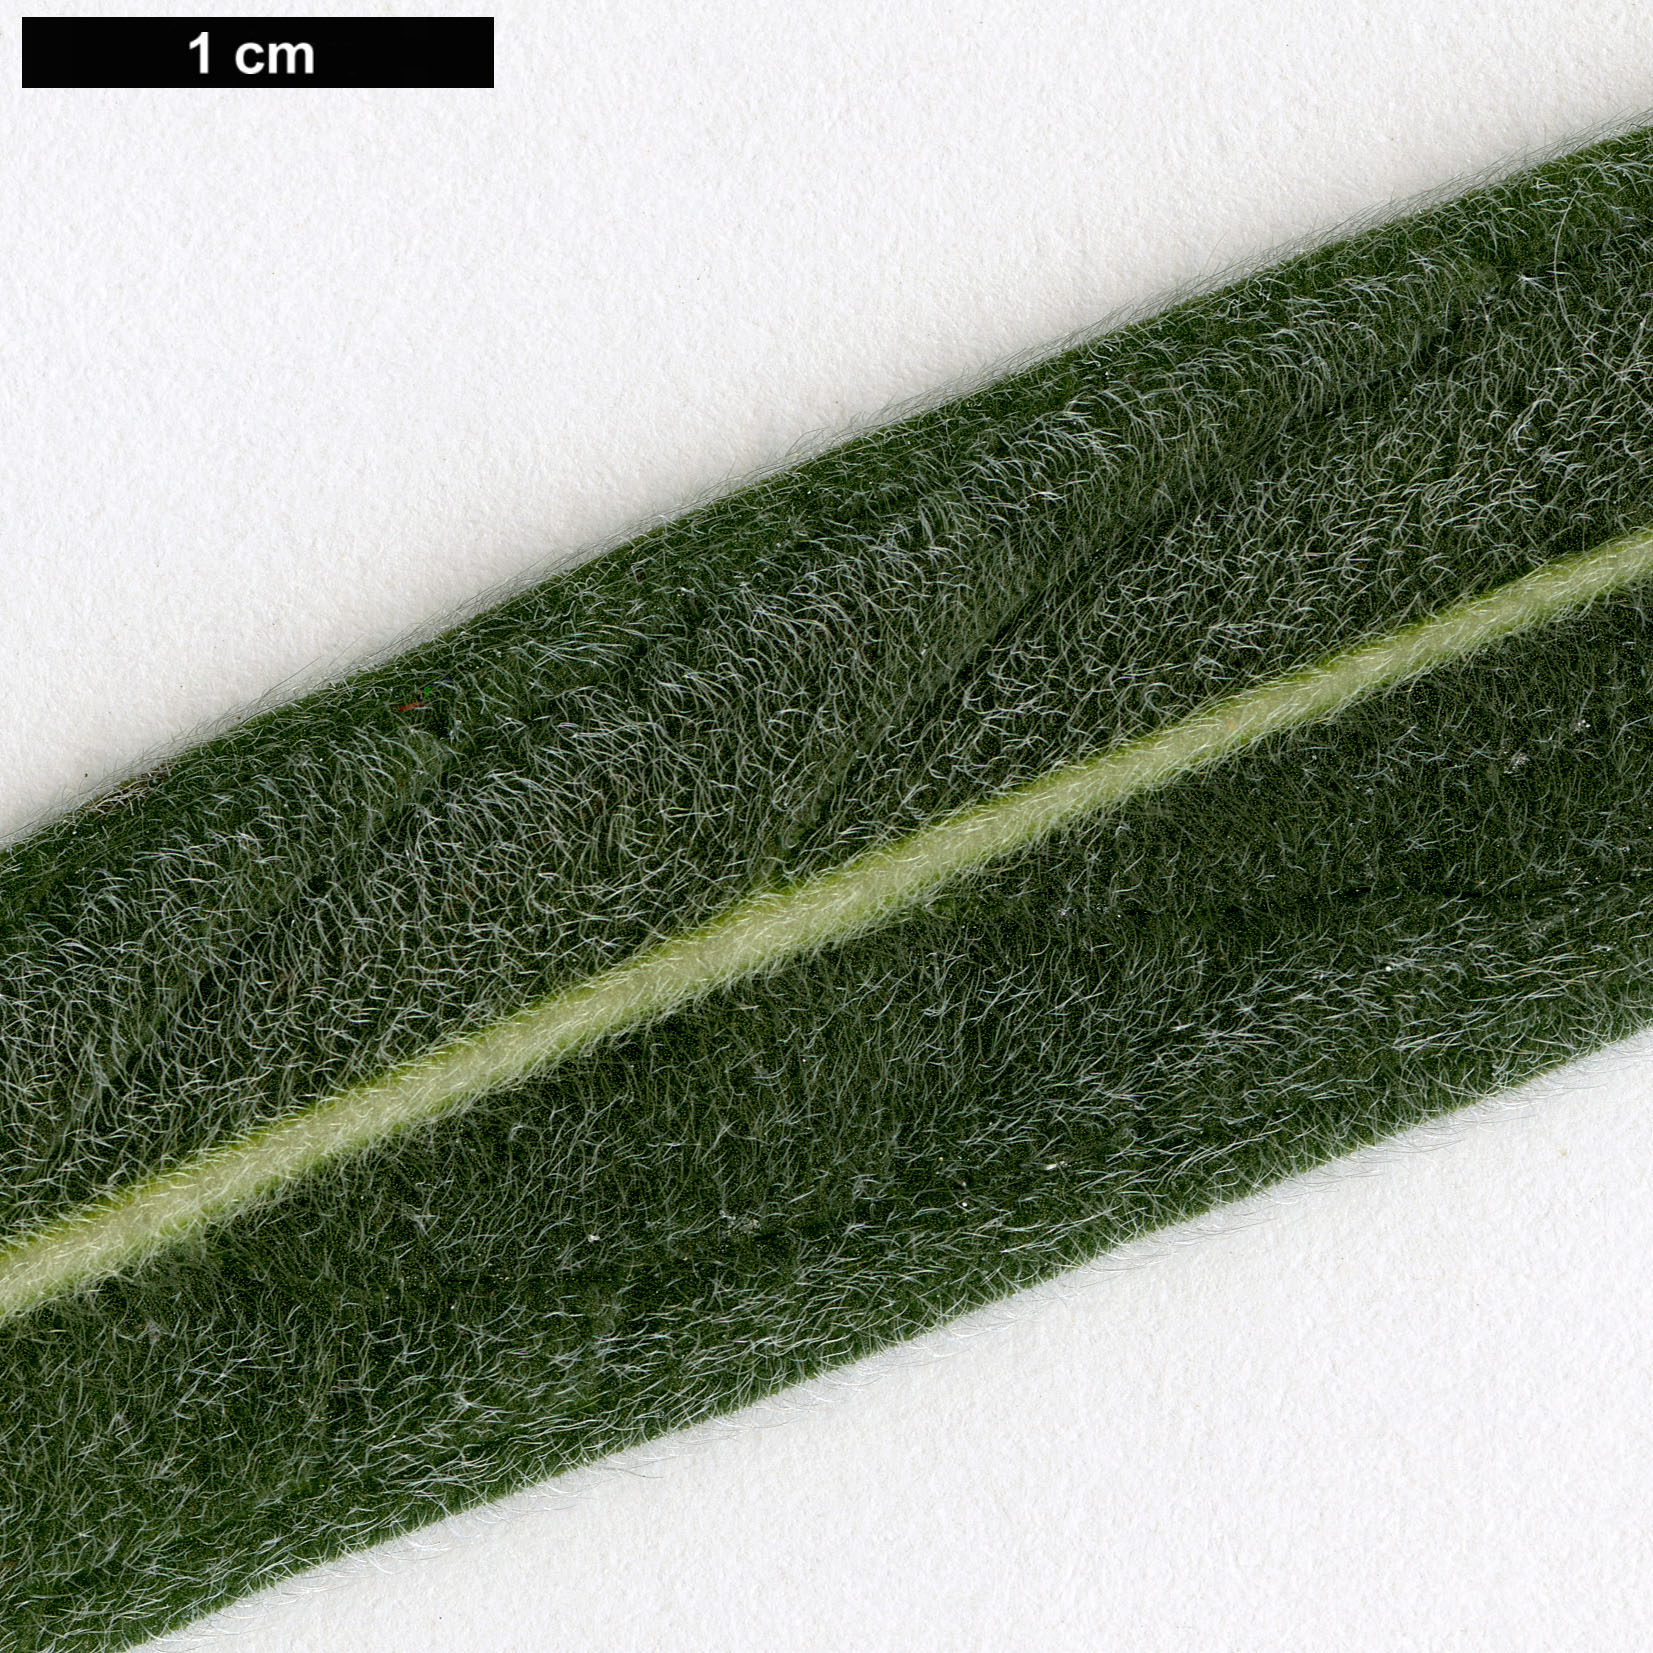 High resolution image: Family: Boraginaceae - Genus: Echium - Taxon: wildpretii